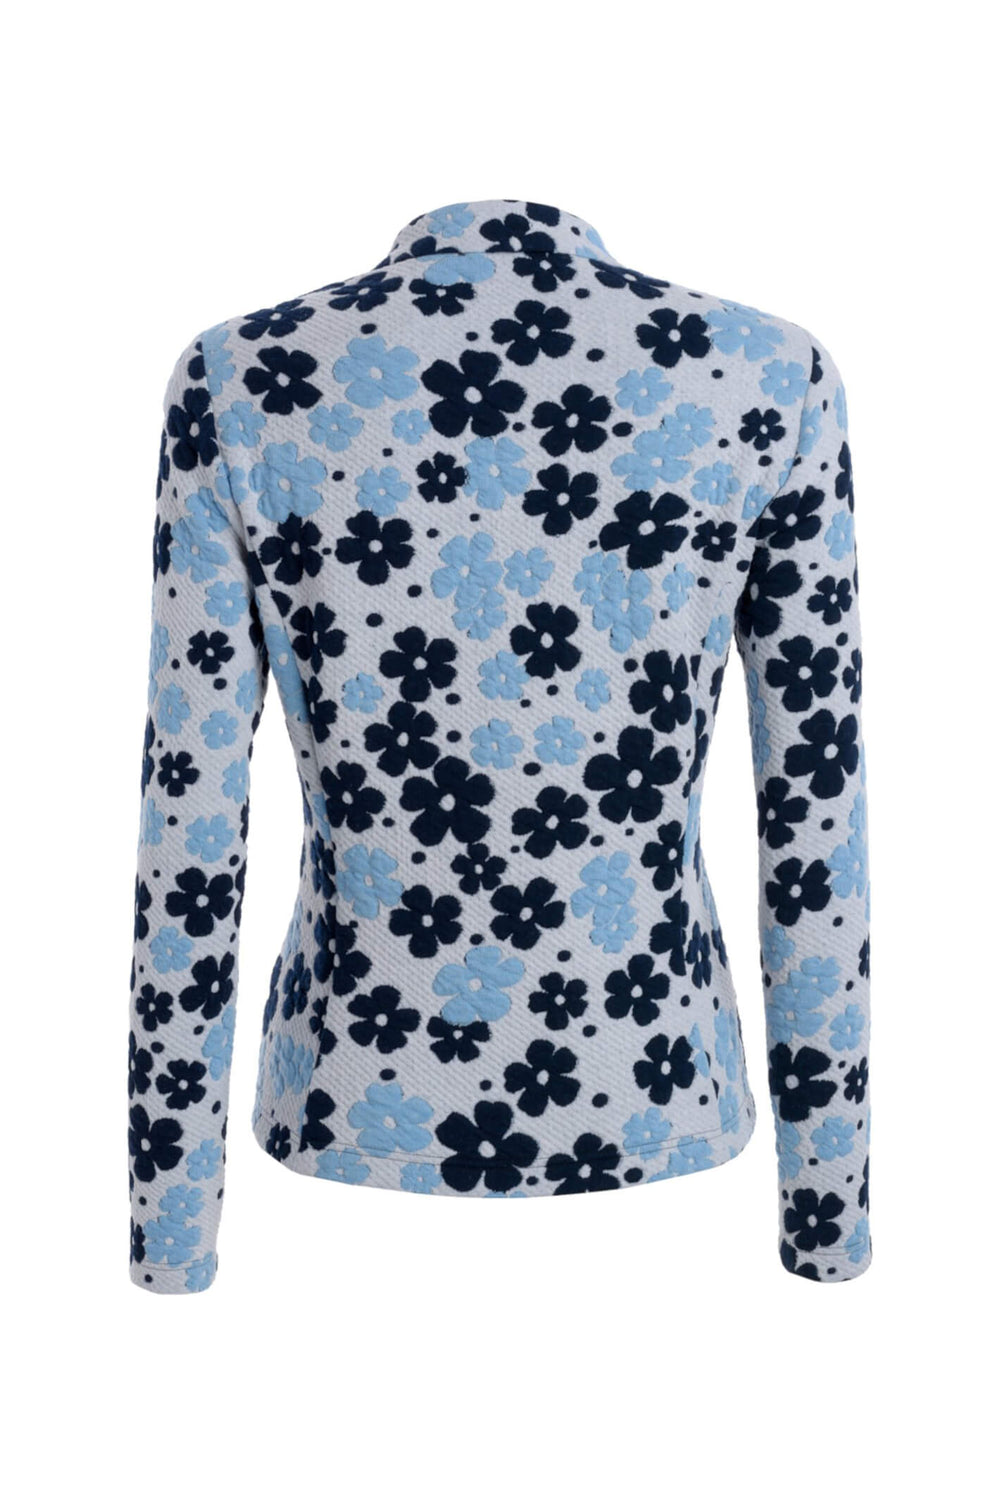 Frank Walder 203.318 221 090 Blue Floral Jacket - Shirley Allum Boutique